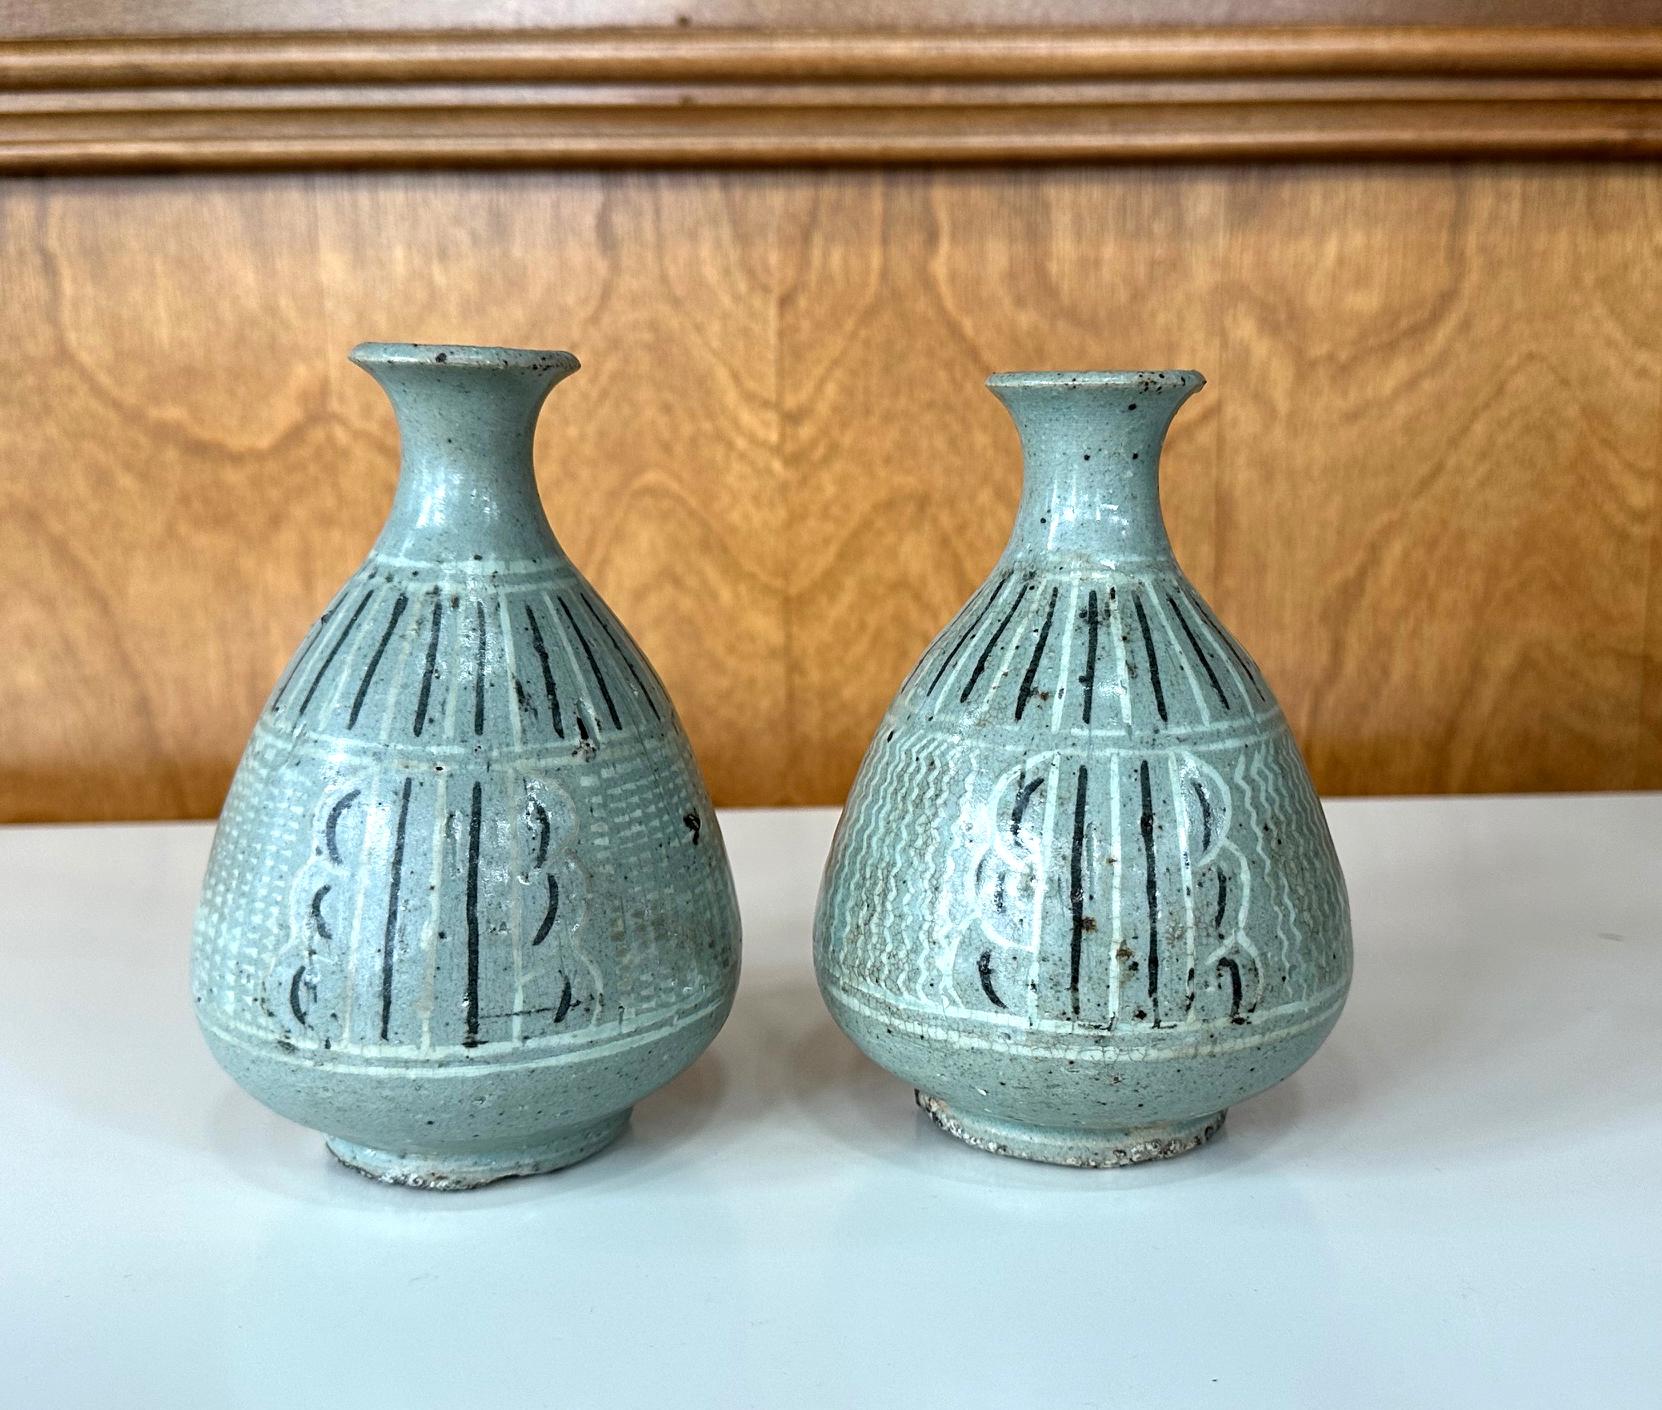 Angeboten wird eine fast paarige antike koreanische Keramikvase vom Ende der Goryeo bis zum Beginn der Joseon-Periode (ca. 14-15.). Die Vasen haben eine keladonfarbene Craquelé-Glasur mit Unterglasur-Intarsien in Schwarz und Weiß. Diese Art von Vase